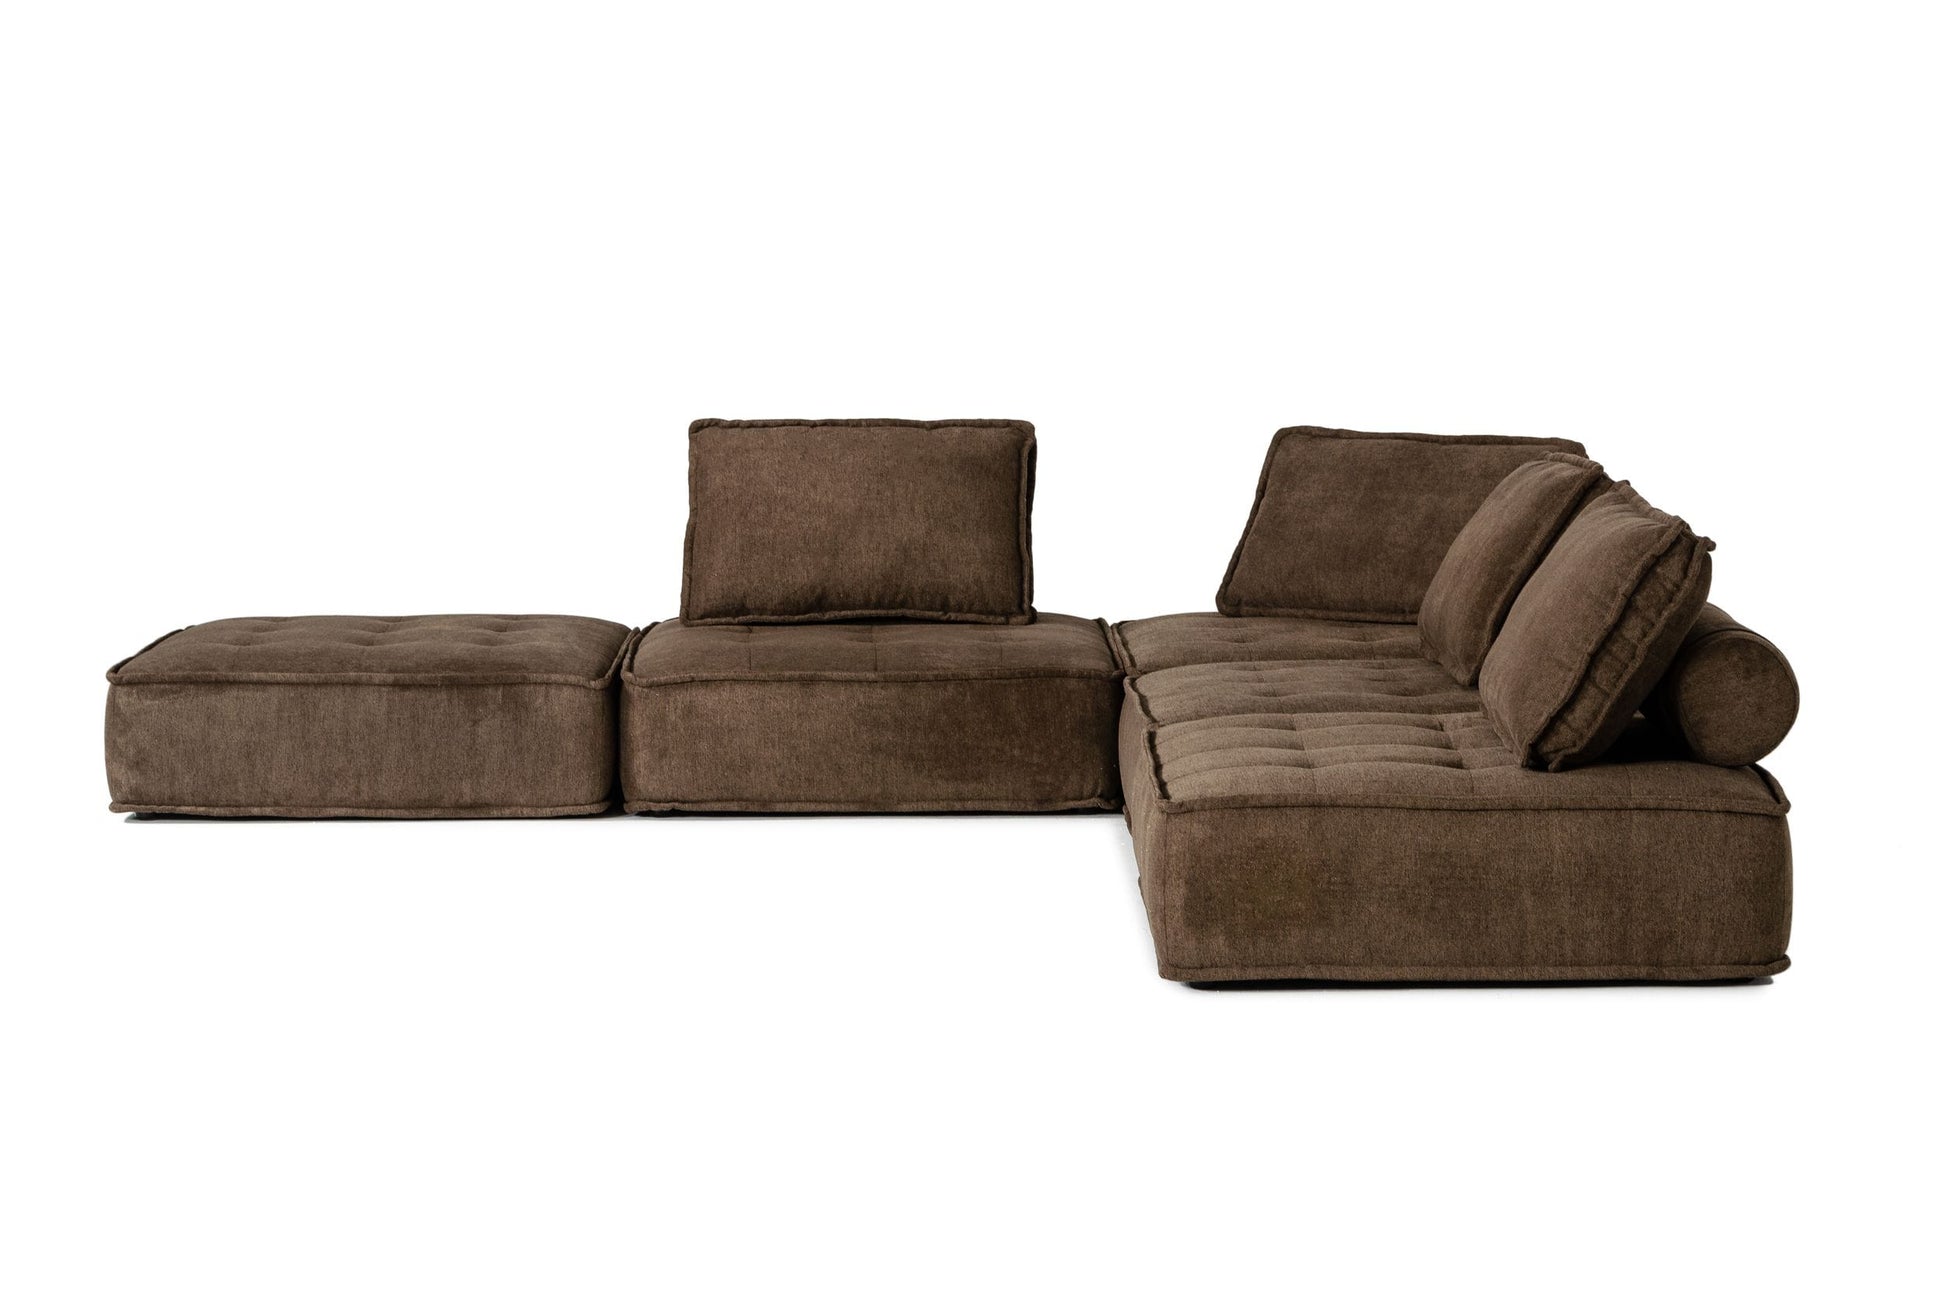 VIG Furniture Divani Casa Nolden Brown Fabric Modular Sectional Sofa